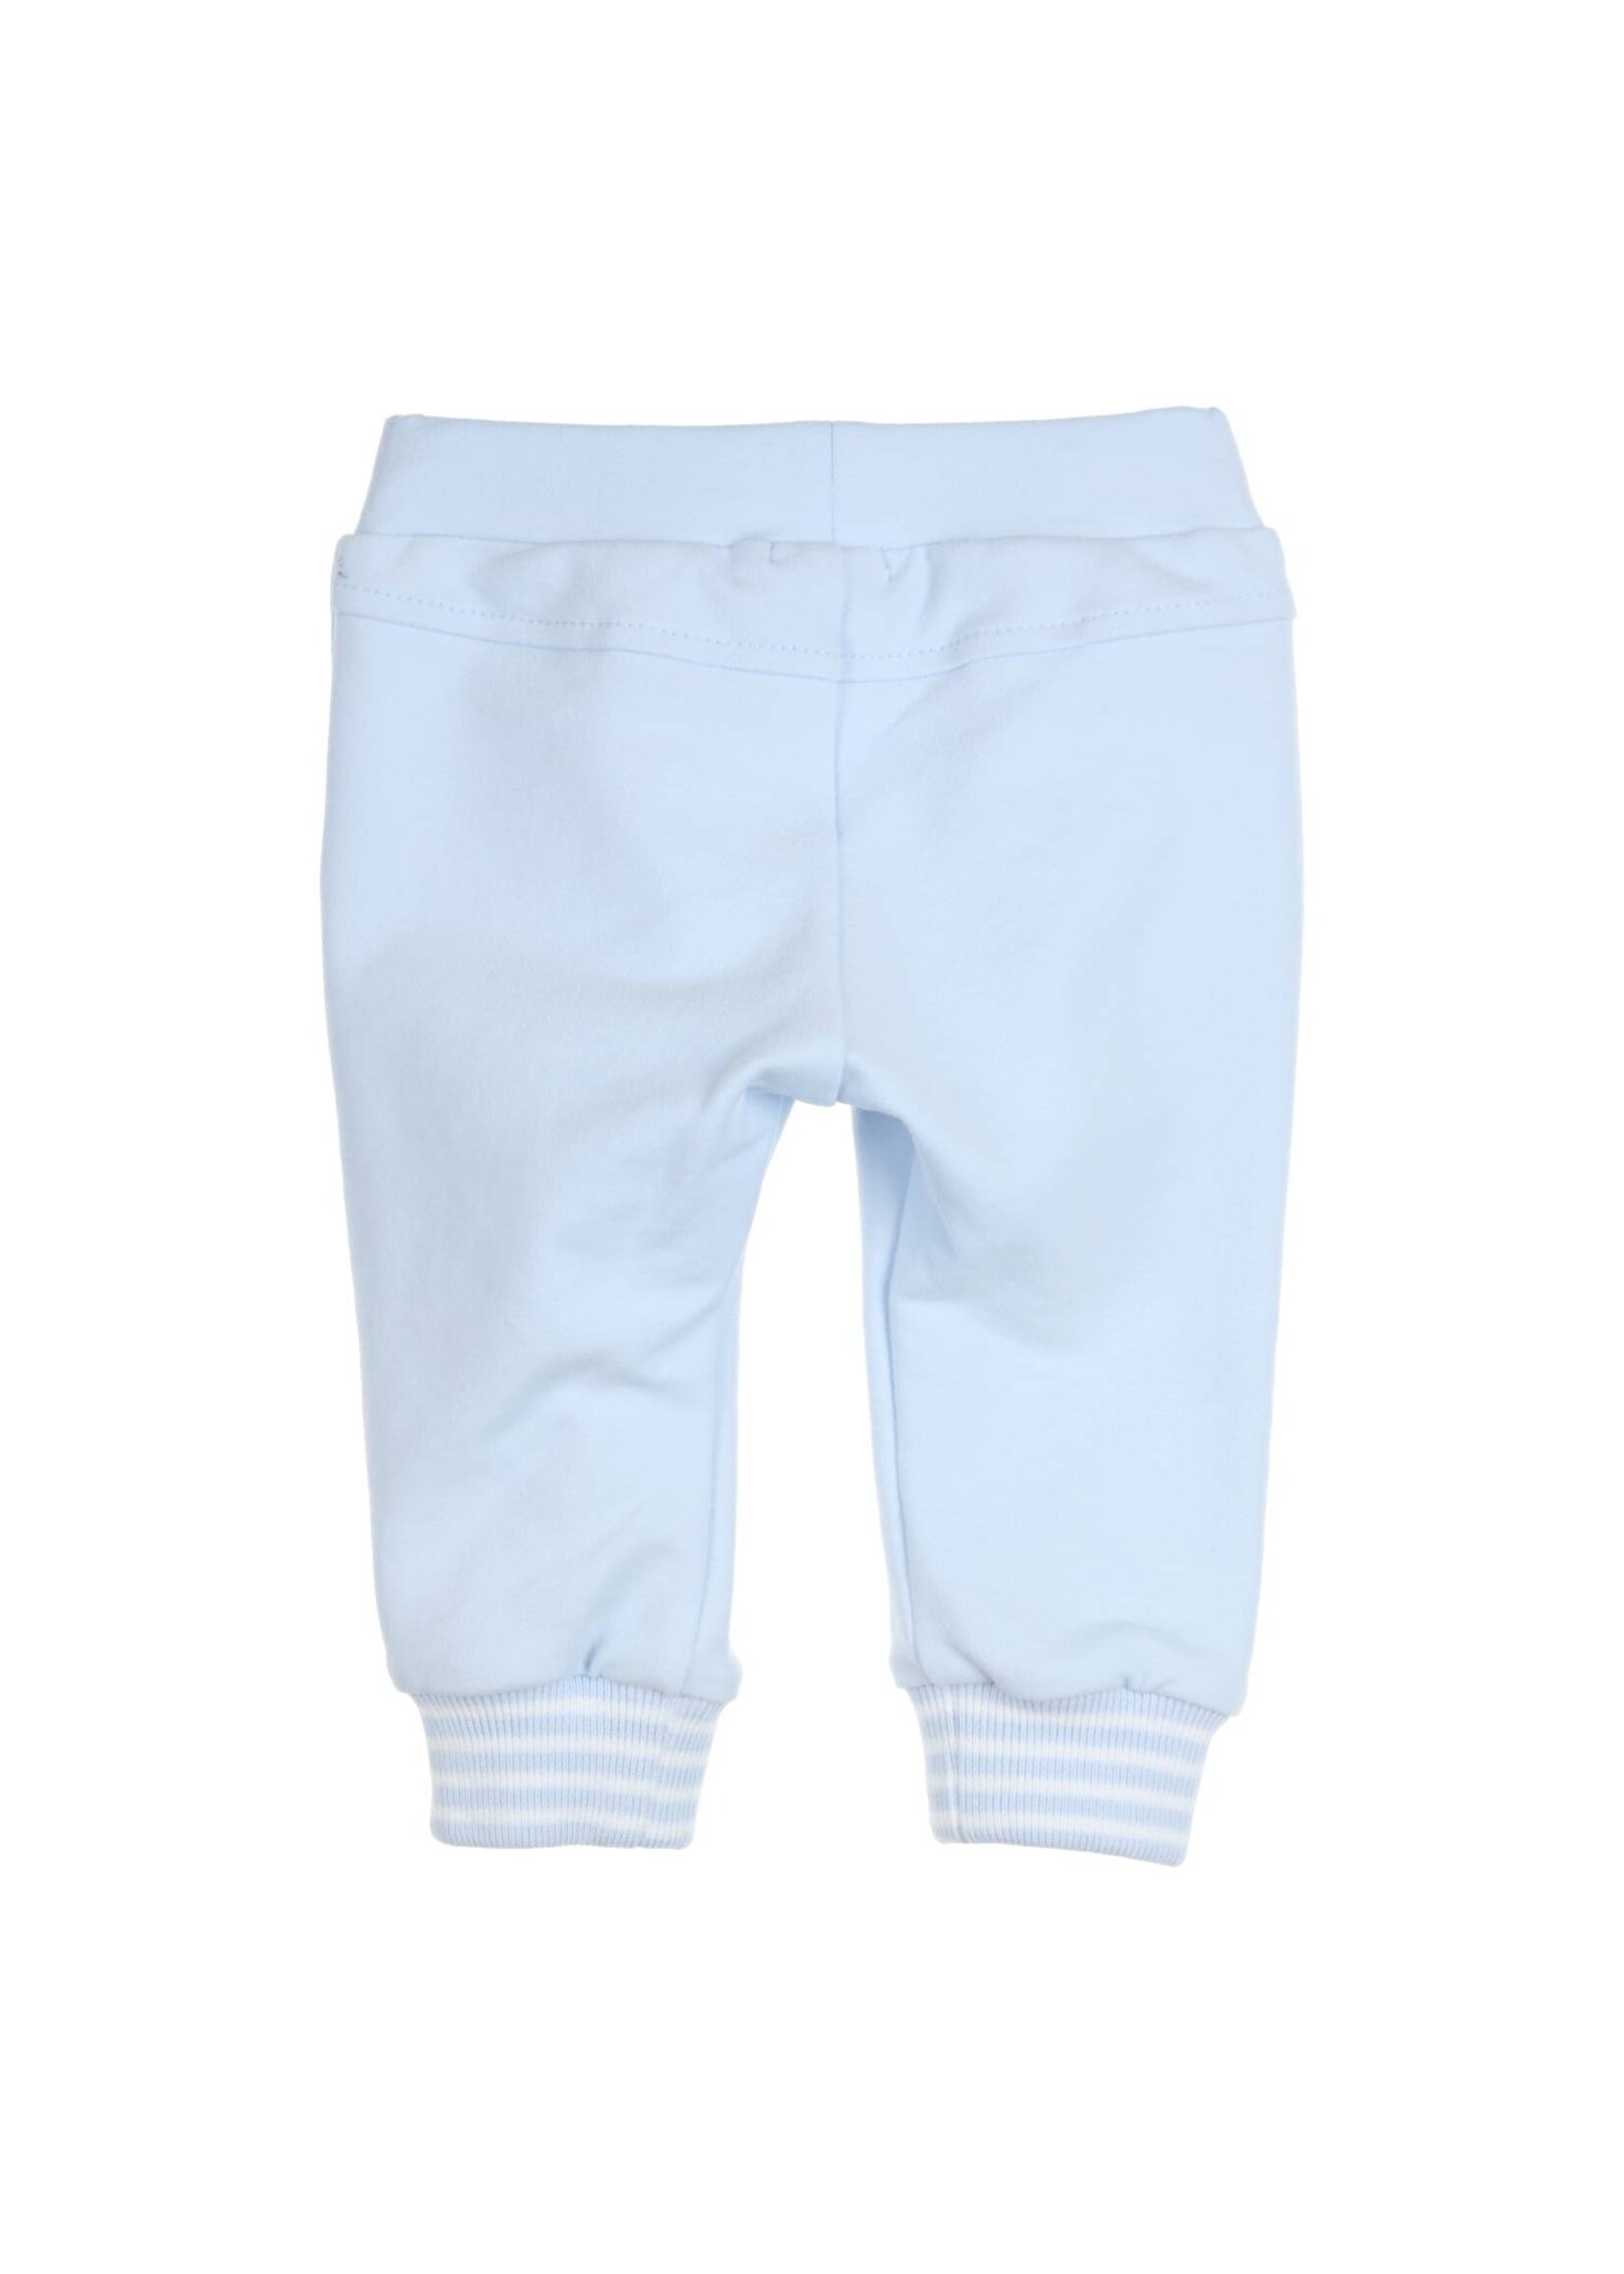 Gymp Boys Trousers Carbon 410-4205-20 Light Blue